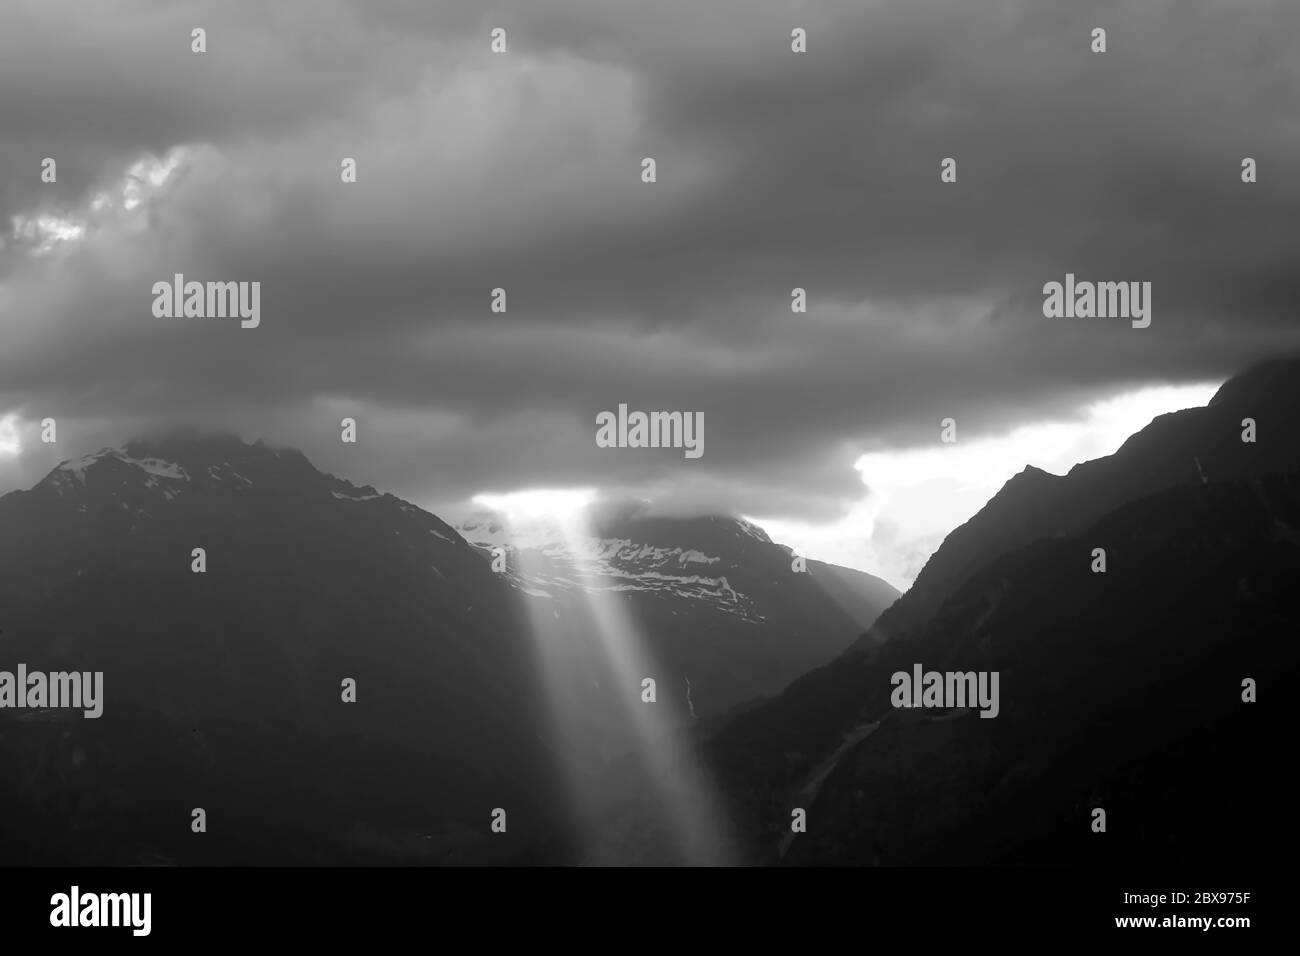 Alpes italiennes entourant la ville de Merano, Tyrol du Sud, Italie. Photographie en noir et blanc, niveaux de gris. Banque D'Images